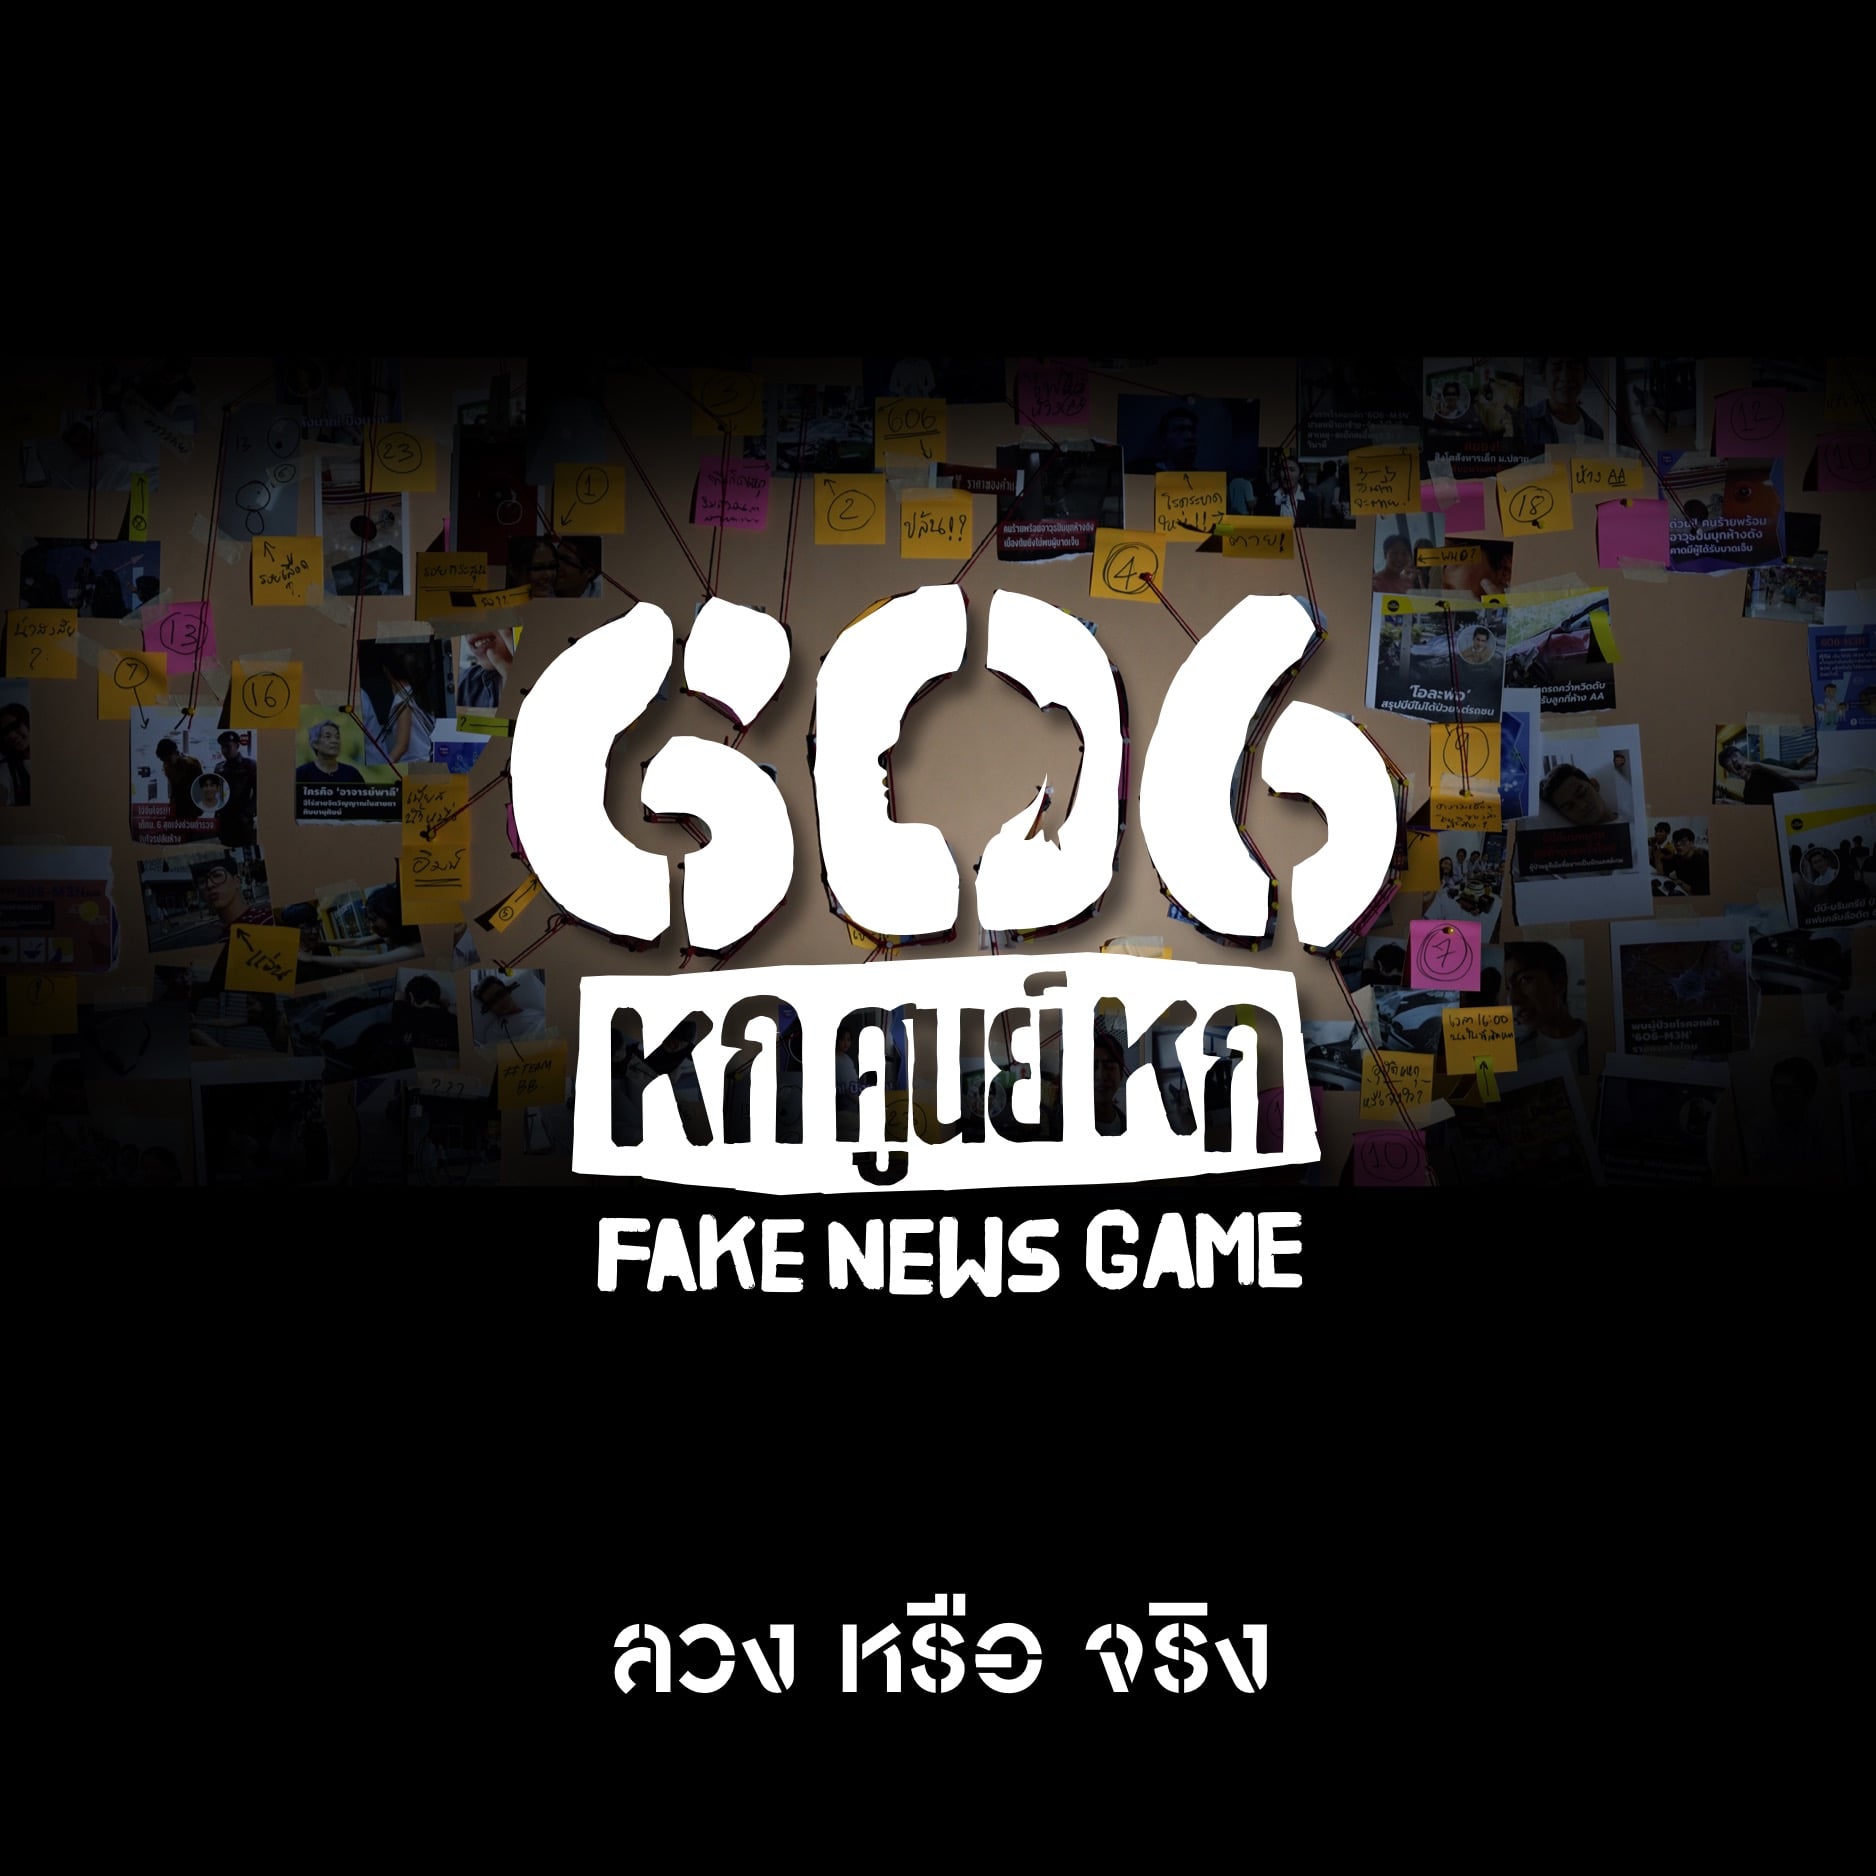 [รีวิวเกม] 606 FAKE NEWS GAME : ข่าวจริงหรือข่าวปลอม คุณรู้แค่ไหน?